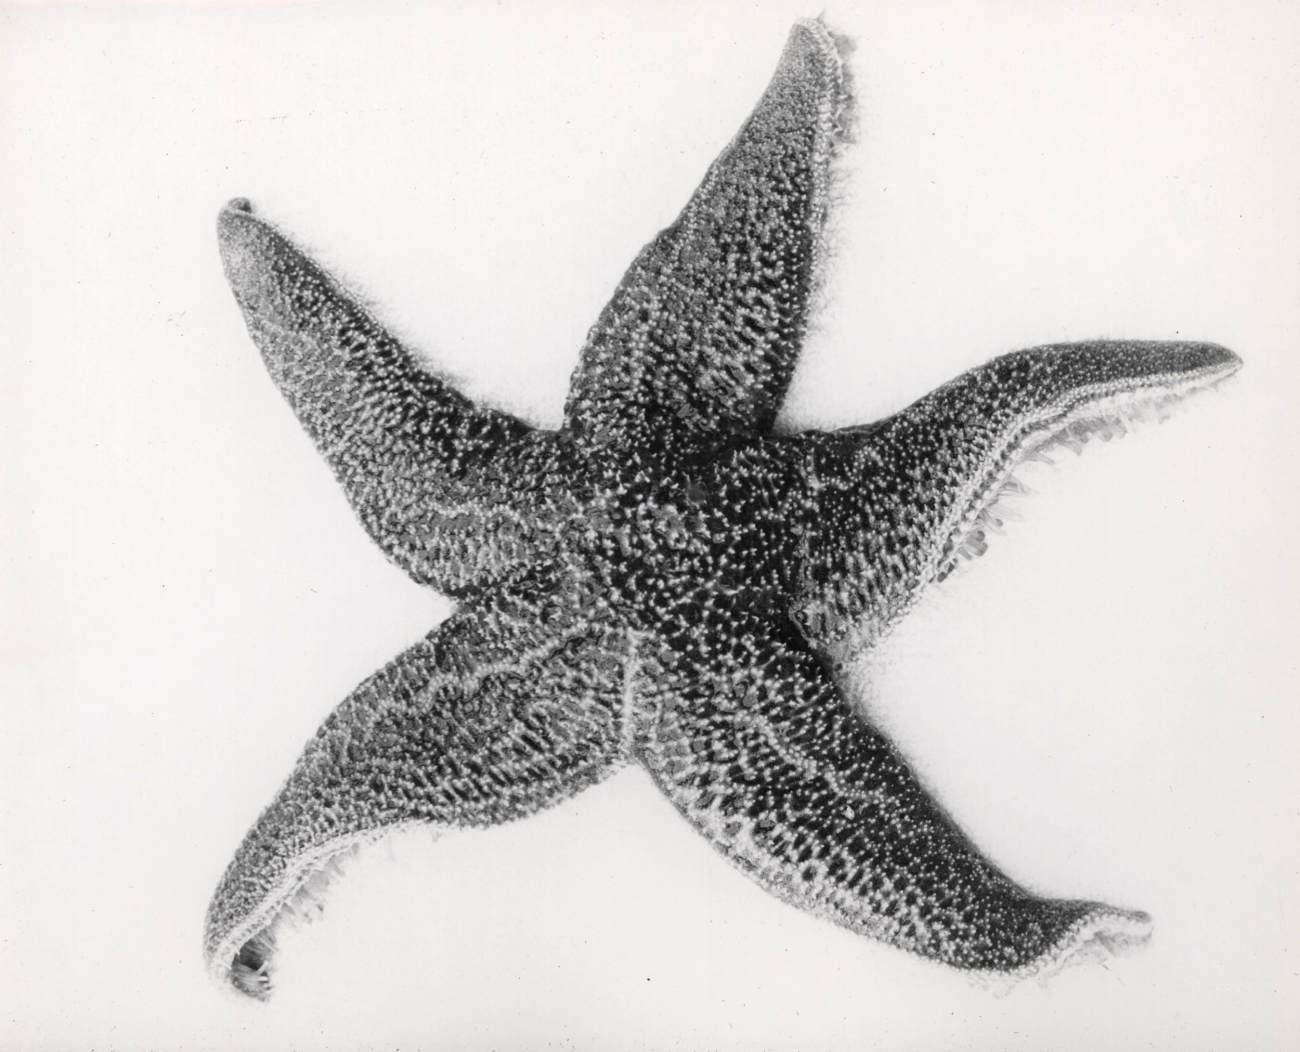 Starfish (Asterias forbesi)